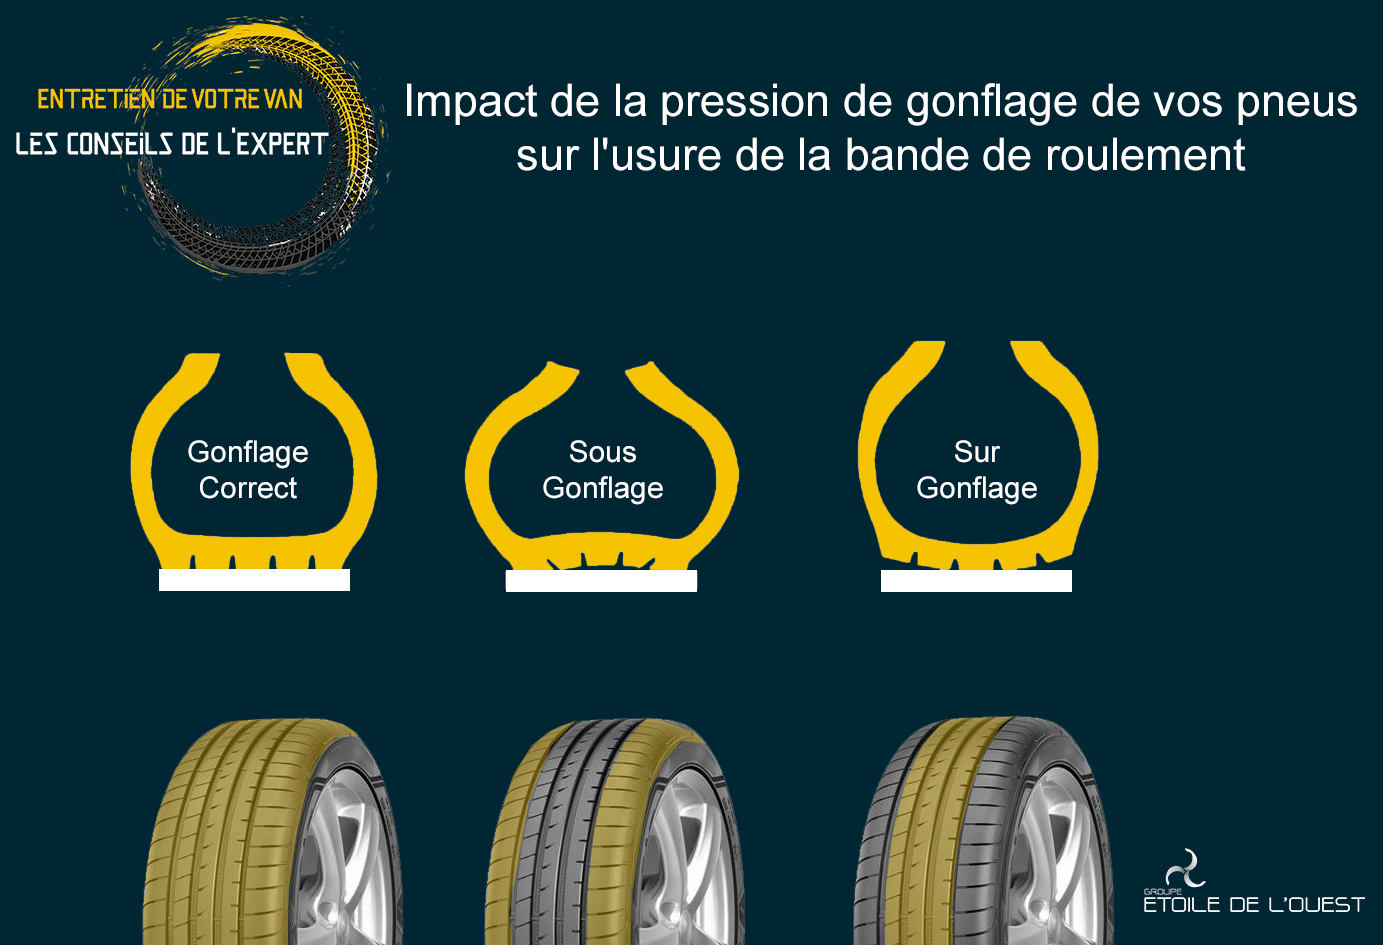 Impact de la pression de gonflage de vos pneus sur l’usure de la bande de roulement